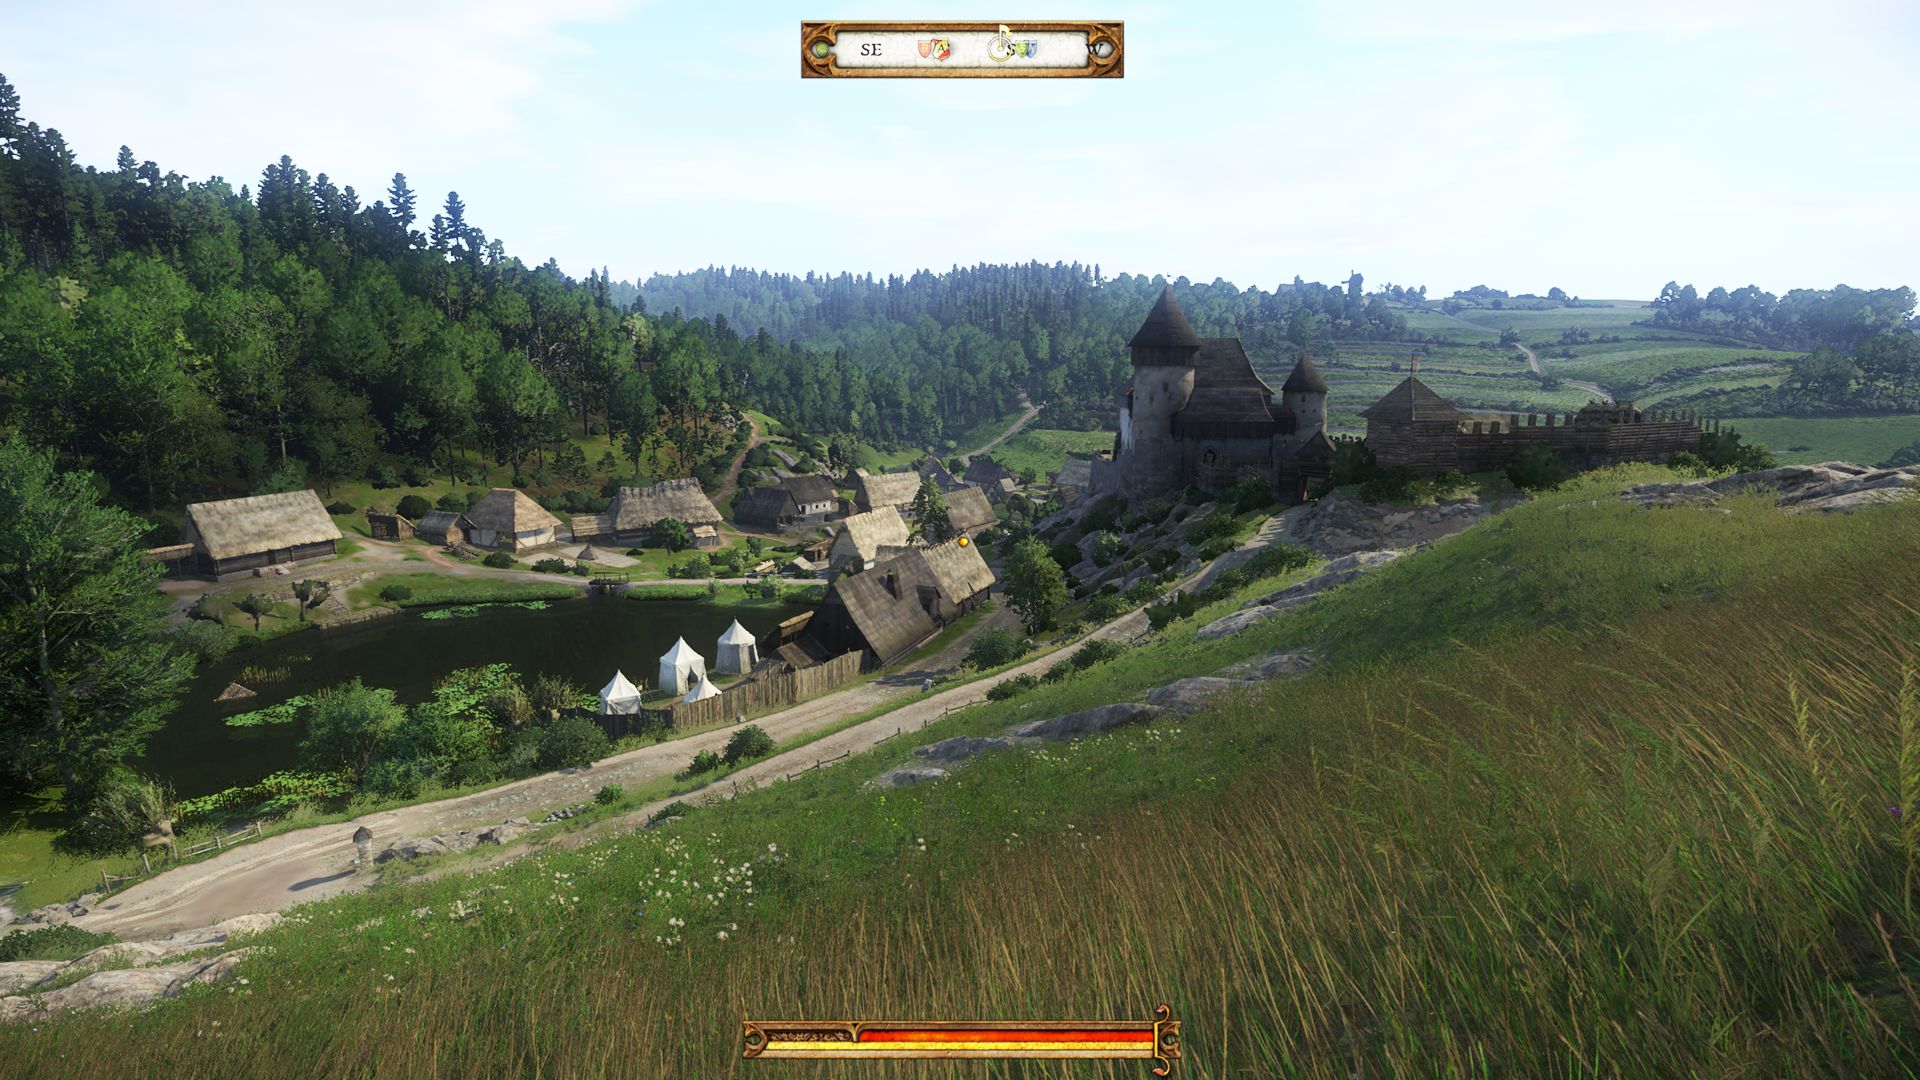 Kingdom Come: Deliverance - A small medieval village on a dirt road beneath a grassy hill